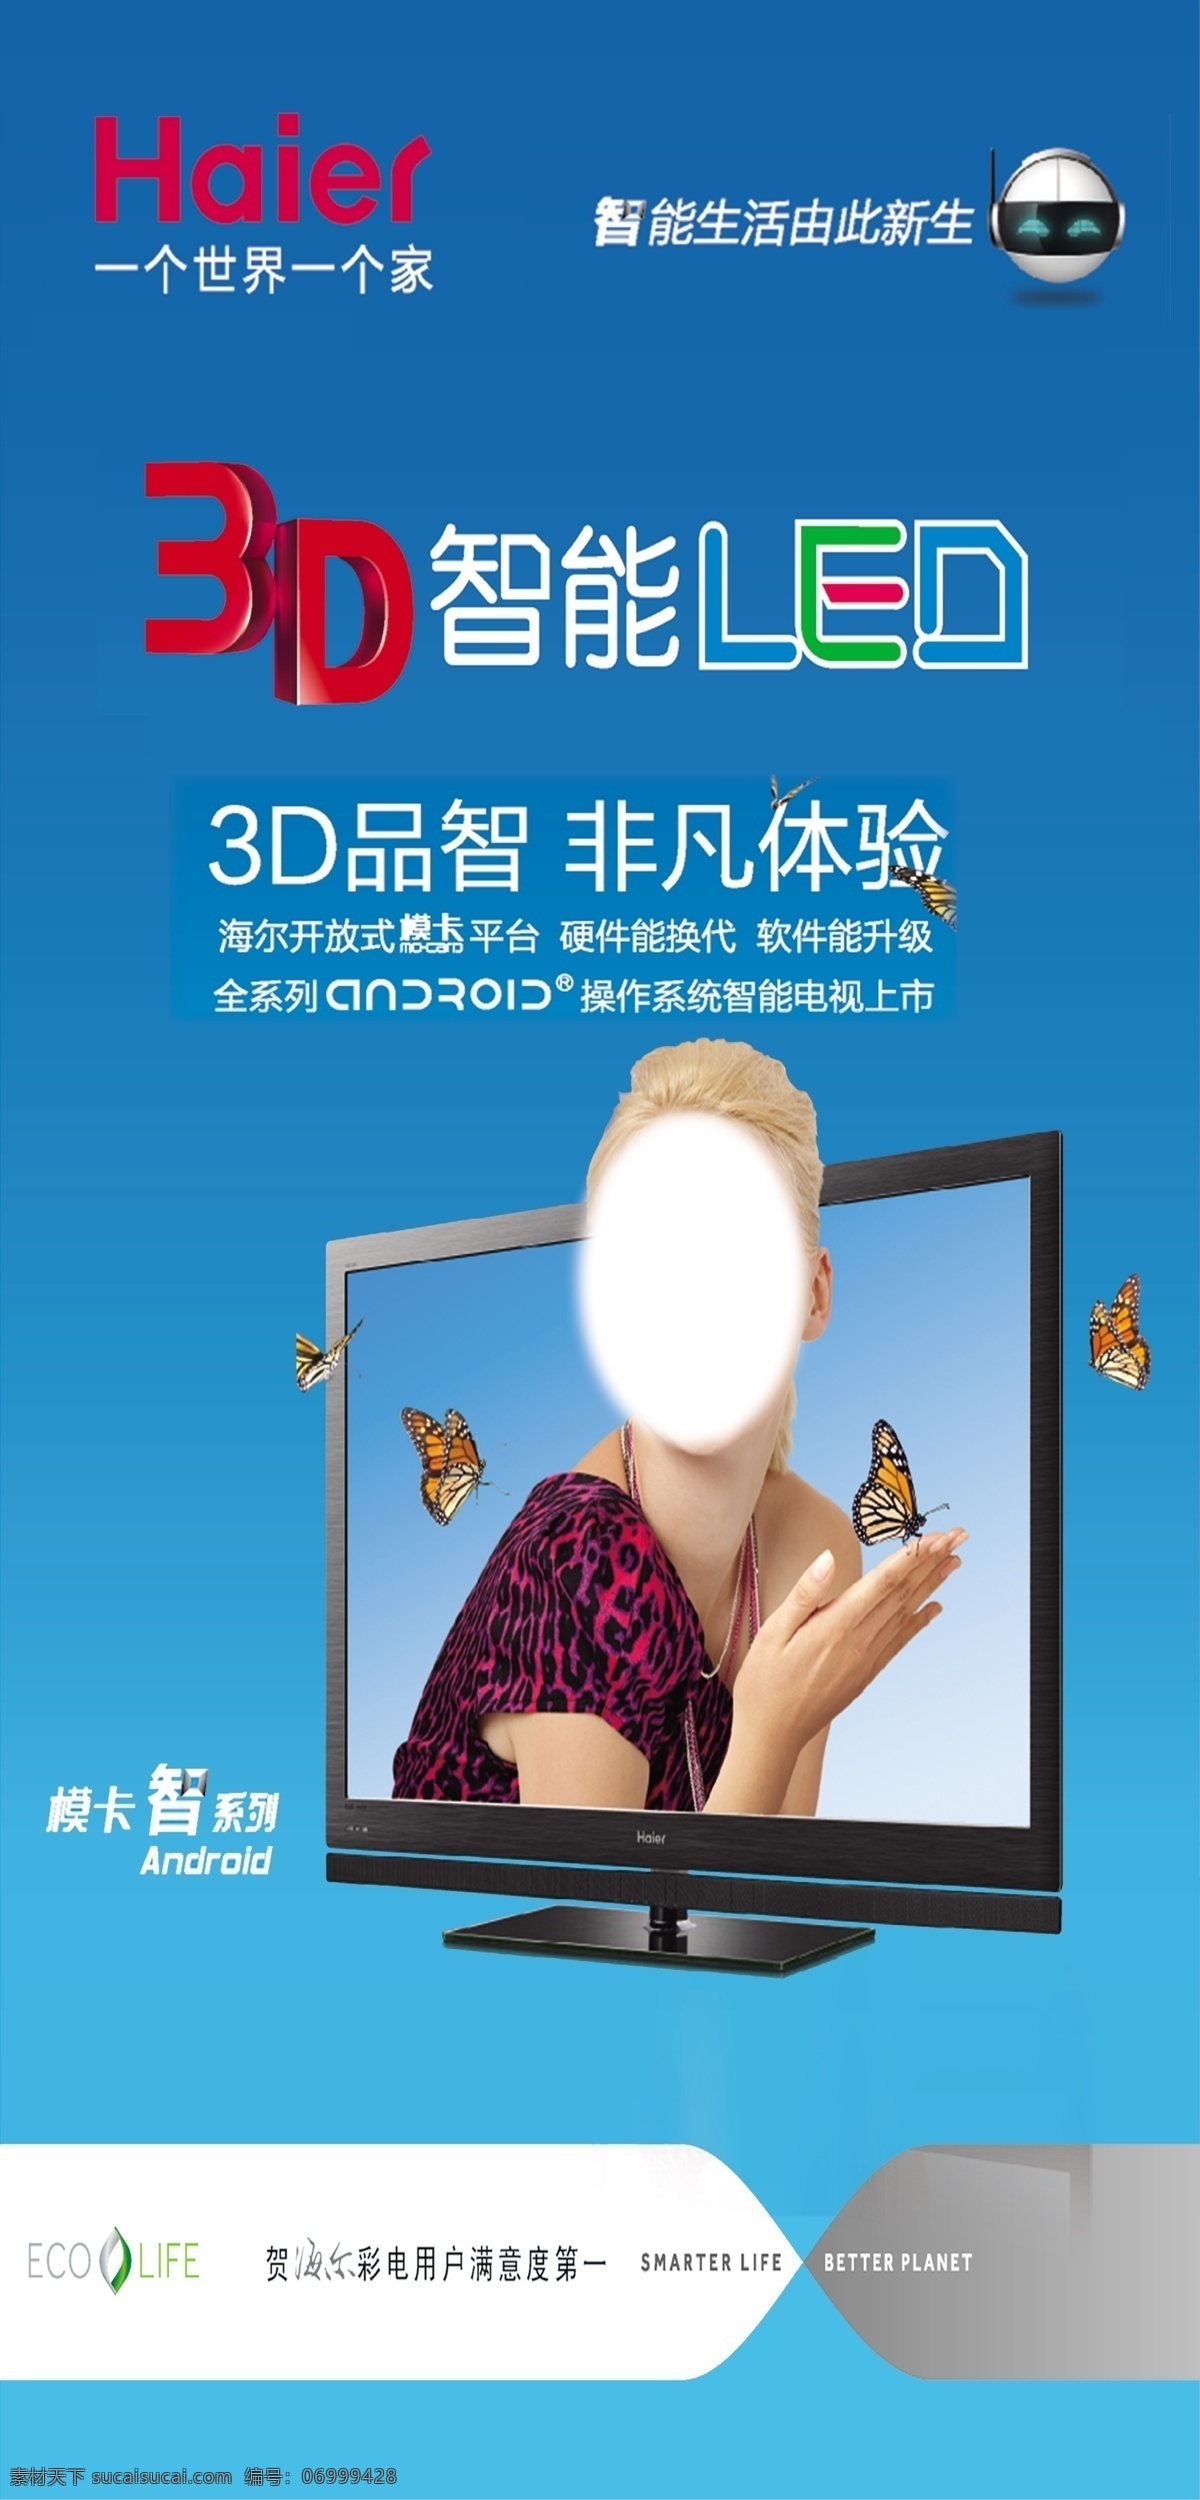 海尔电视 海尔 3d智能 led电视 人物 海尔标志 源文件 设计专用 展板 展板模板 广告设计模板